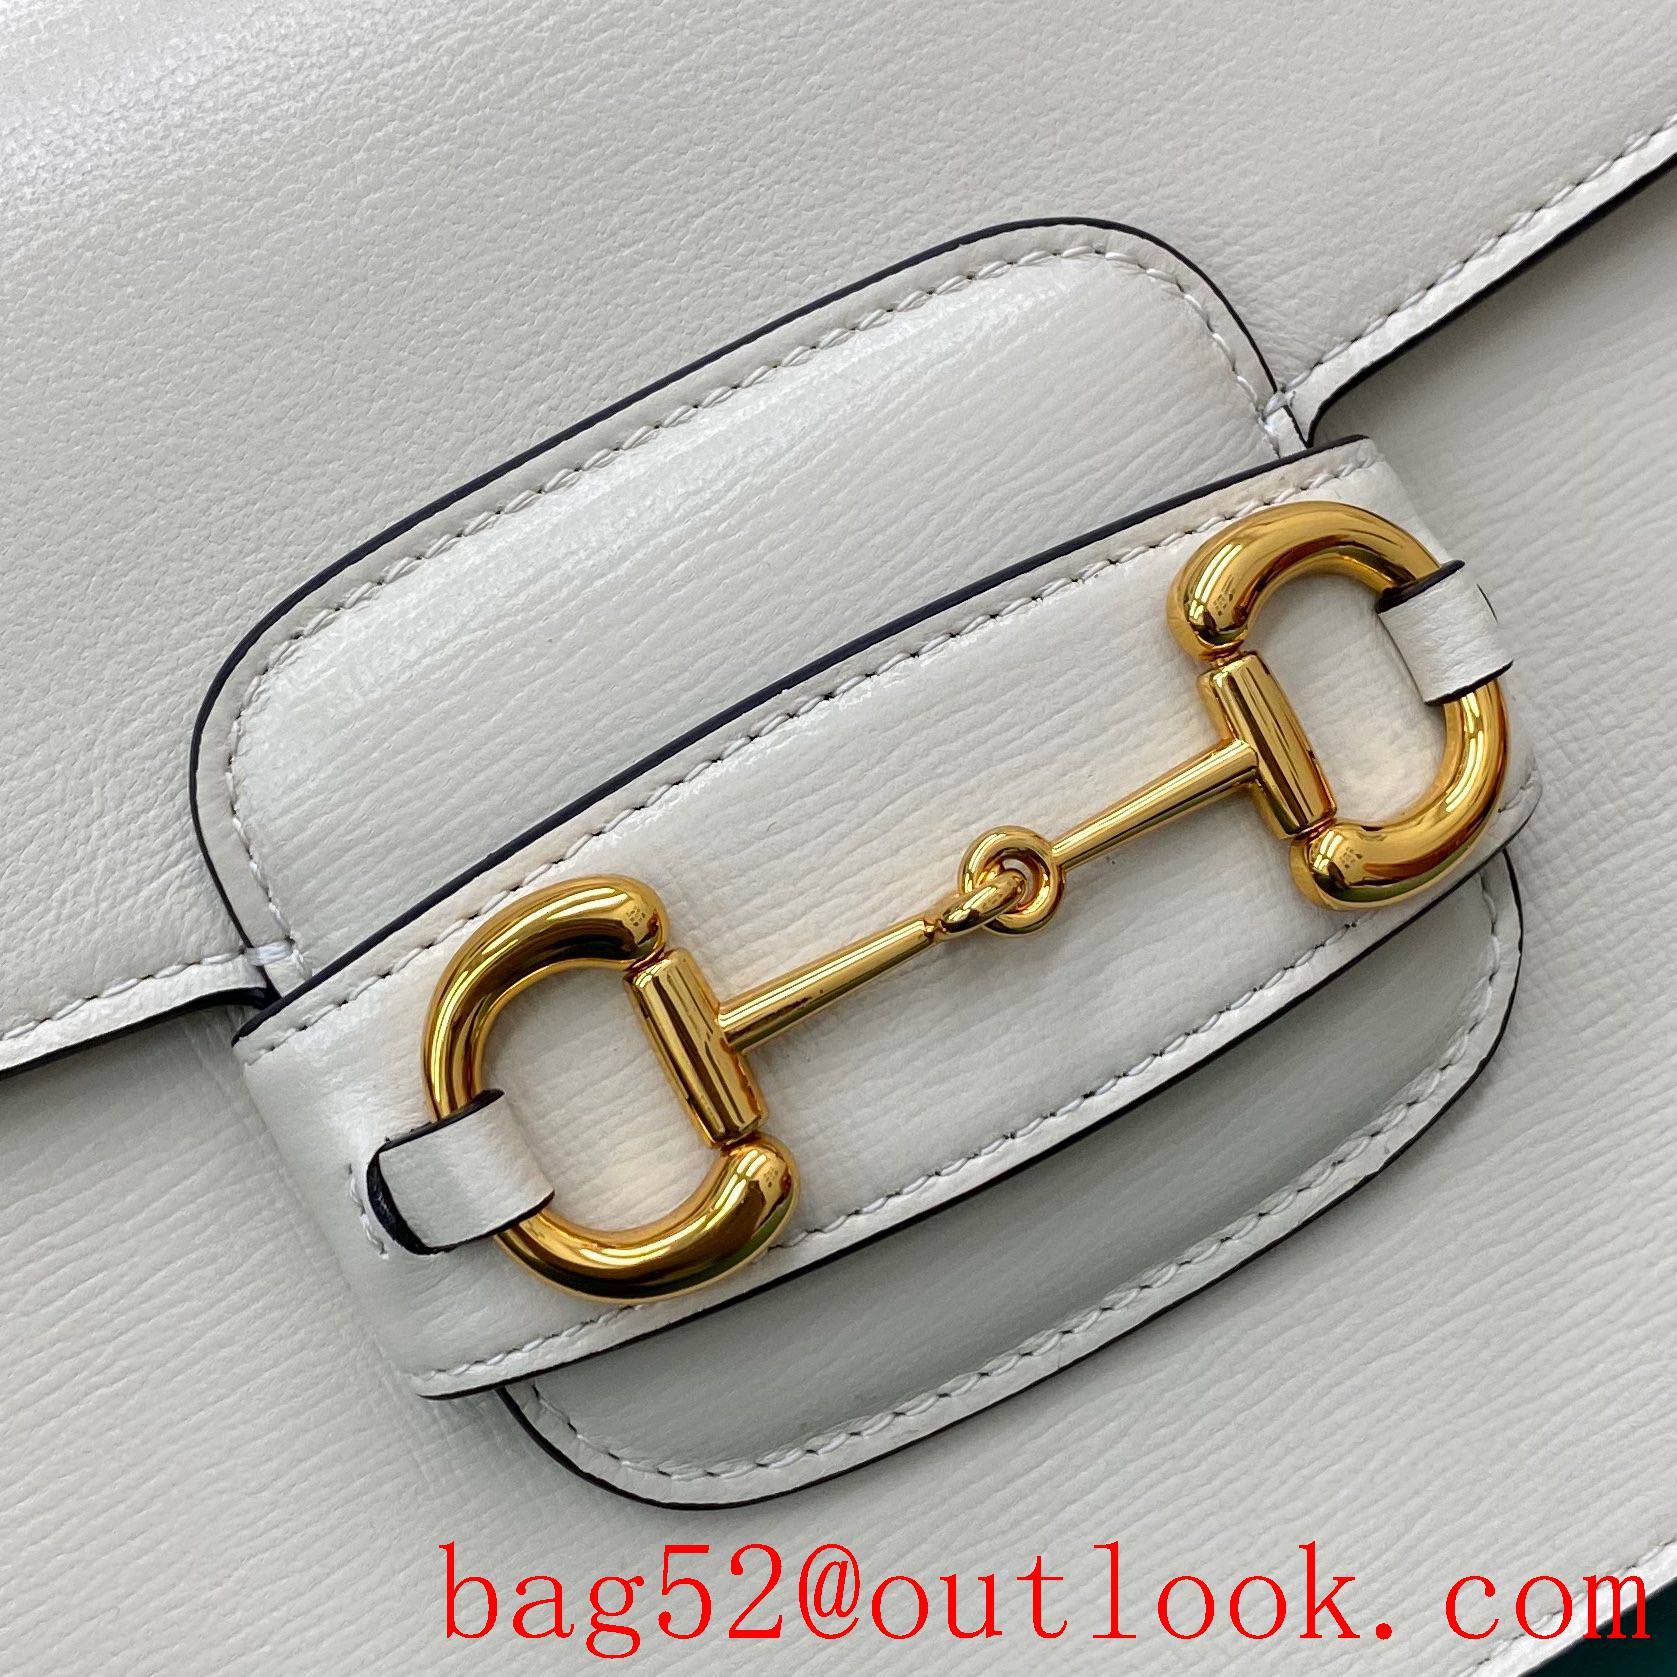 Gucci 1955 Full Leather Saddle white shoulder handbag